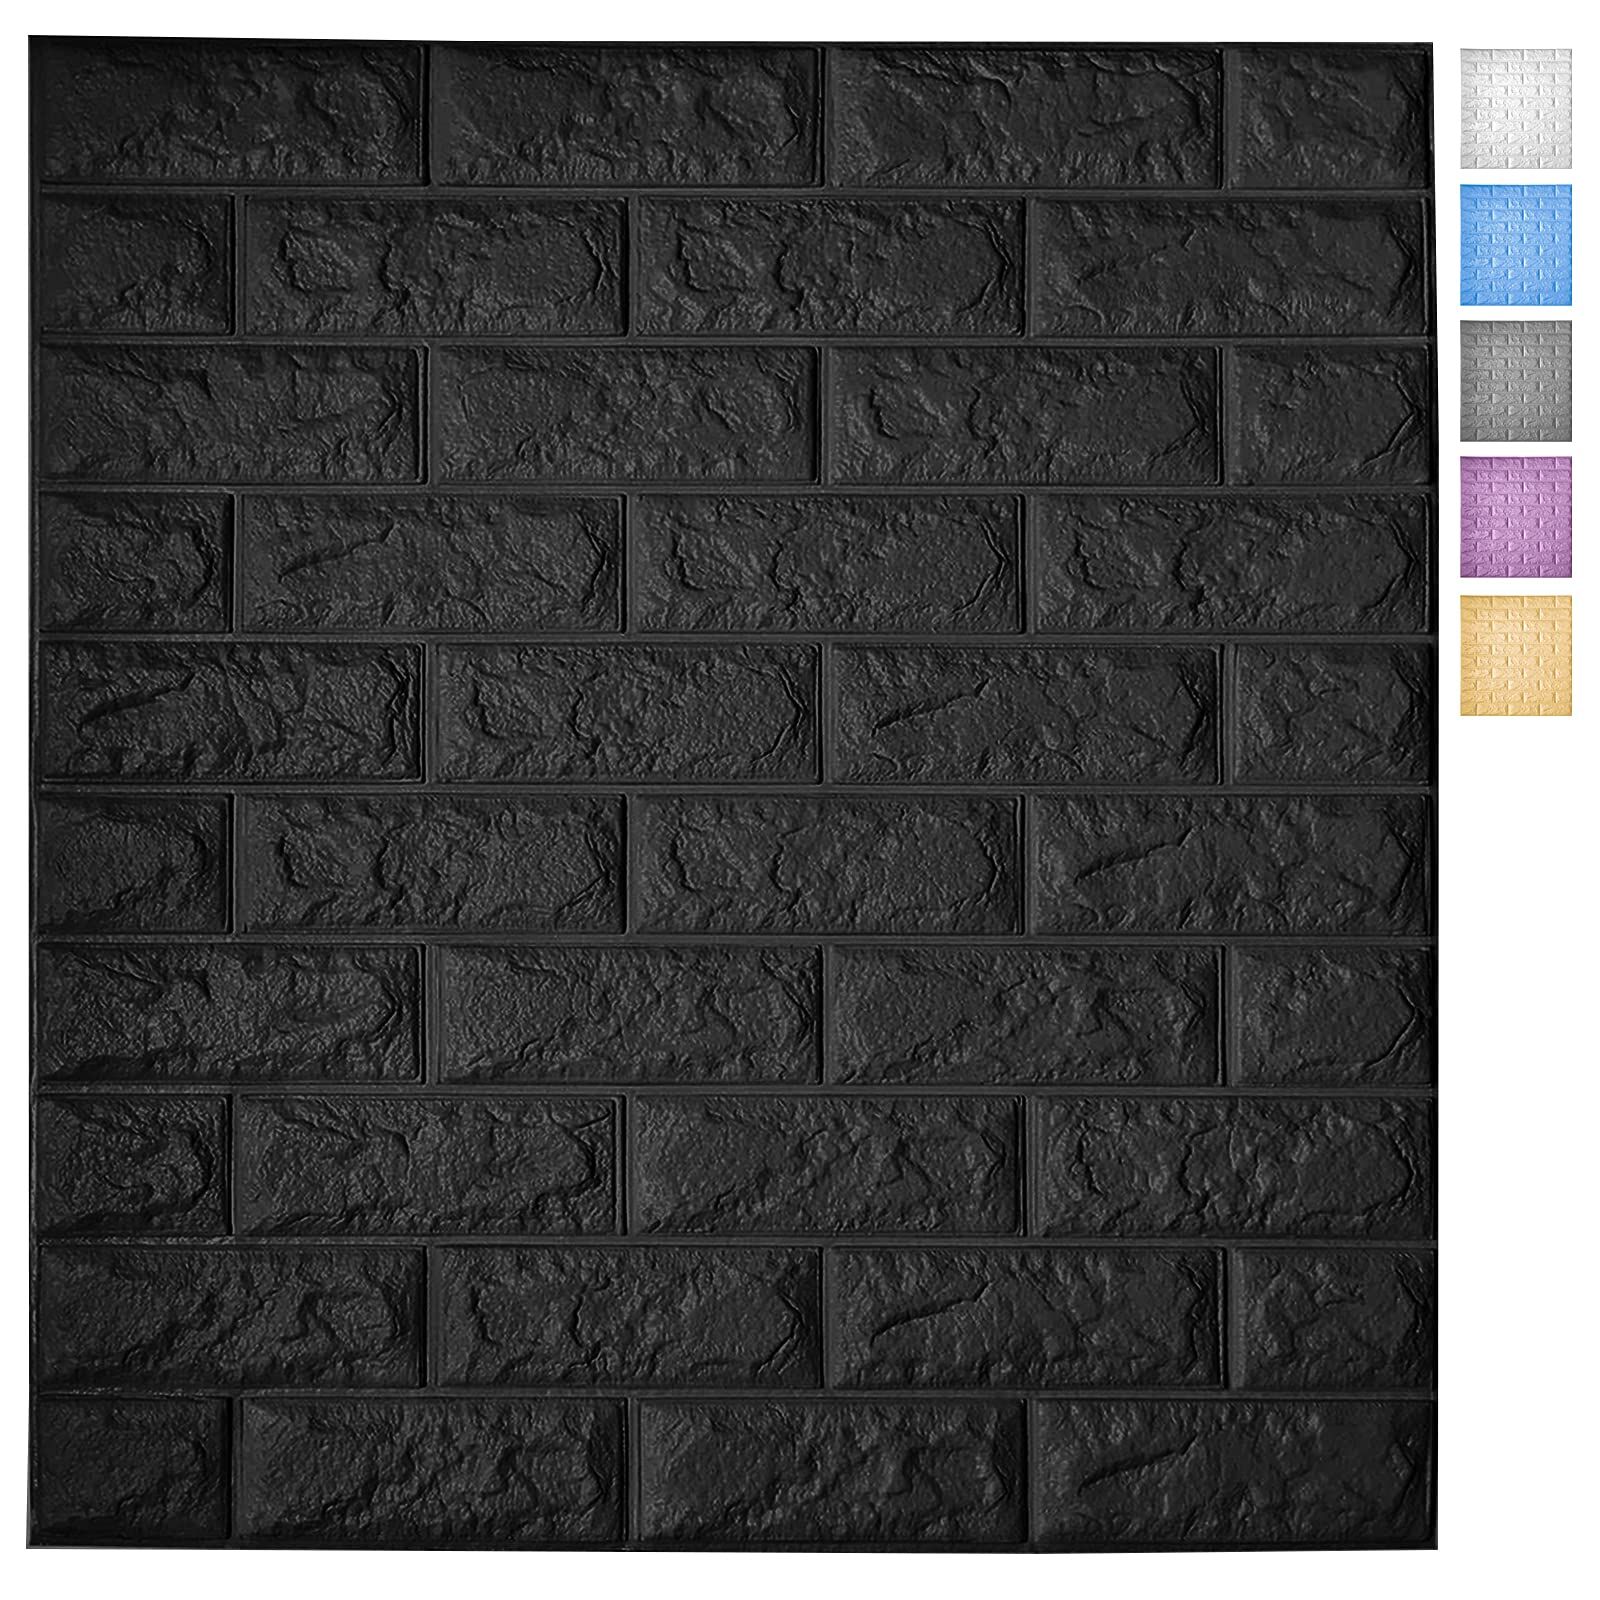 Art3d 5-Pack Peel en Stick 3D Wallpaper Panelen voor Interieur Wall Decor Zelfklevende Schuim Bakstenen Wallpapers in Black, Covers 22 Sq.ft